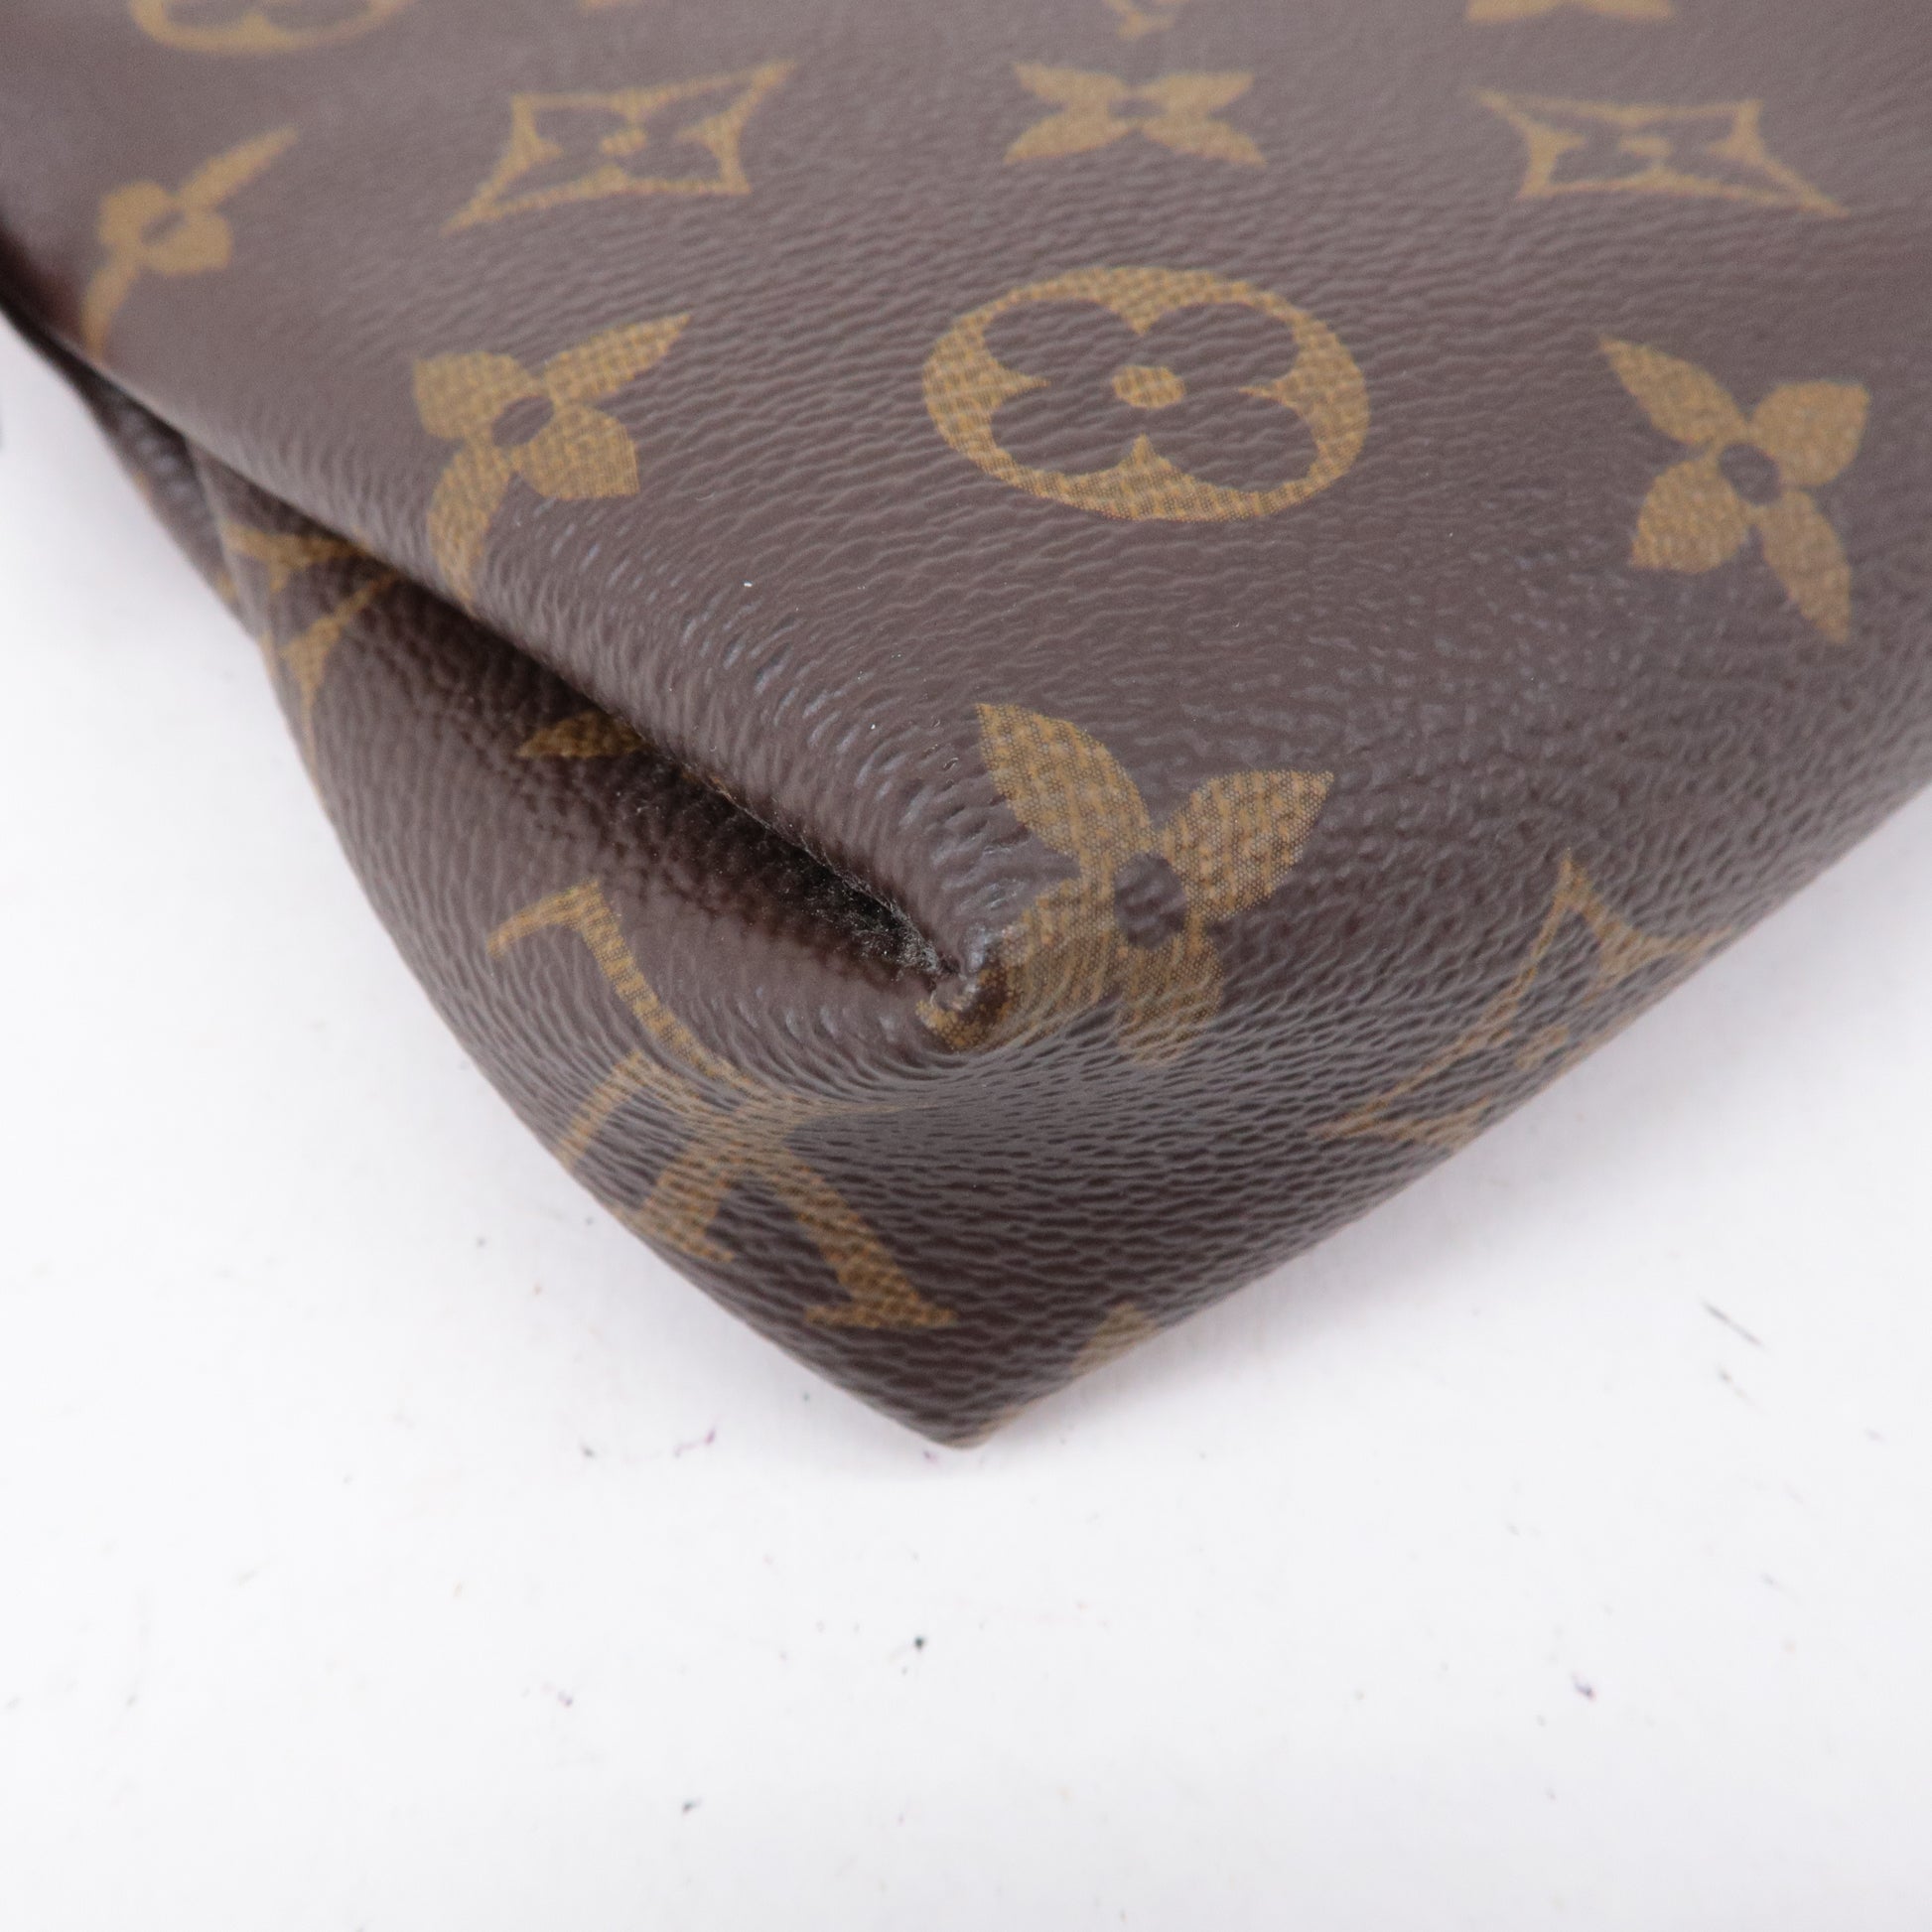 Louis-Vuitton-Monogram-Pallas-Clutch-2-Way-Bag-Cerise-M41638